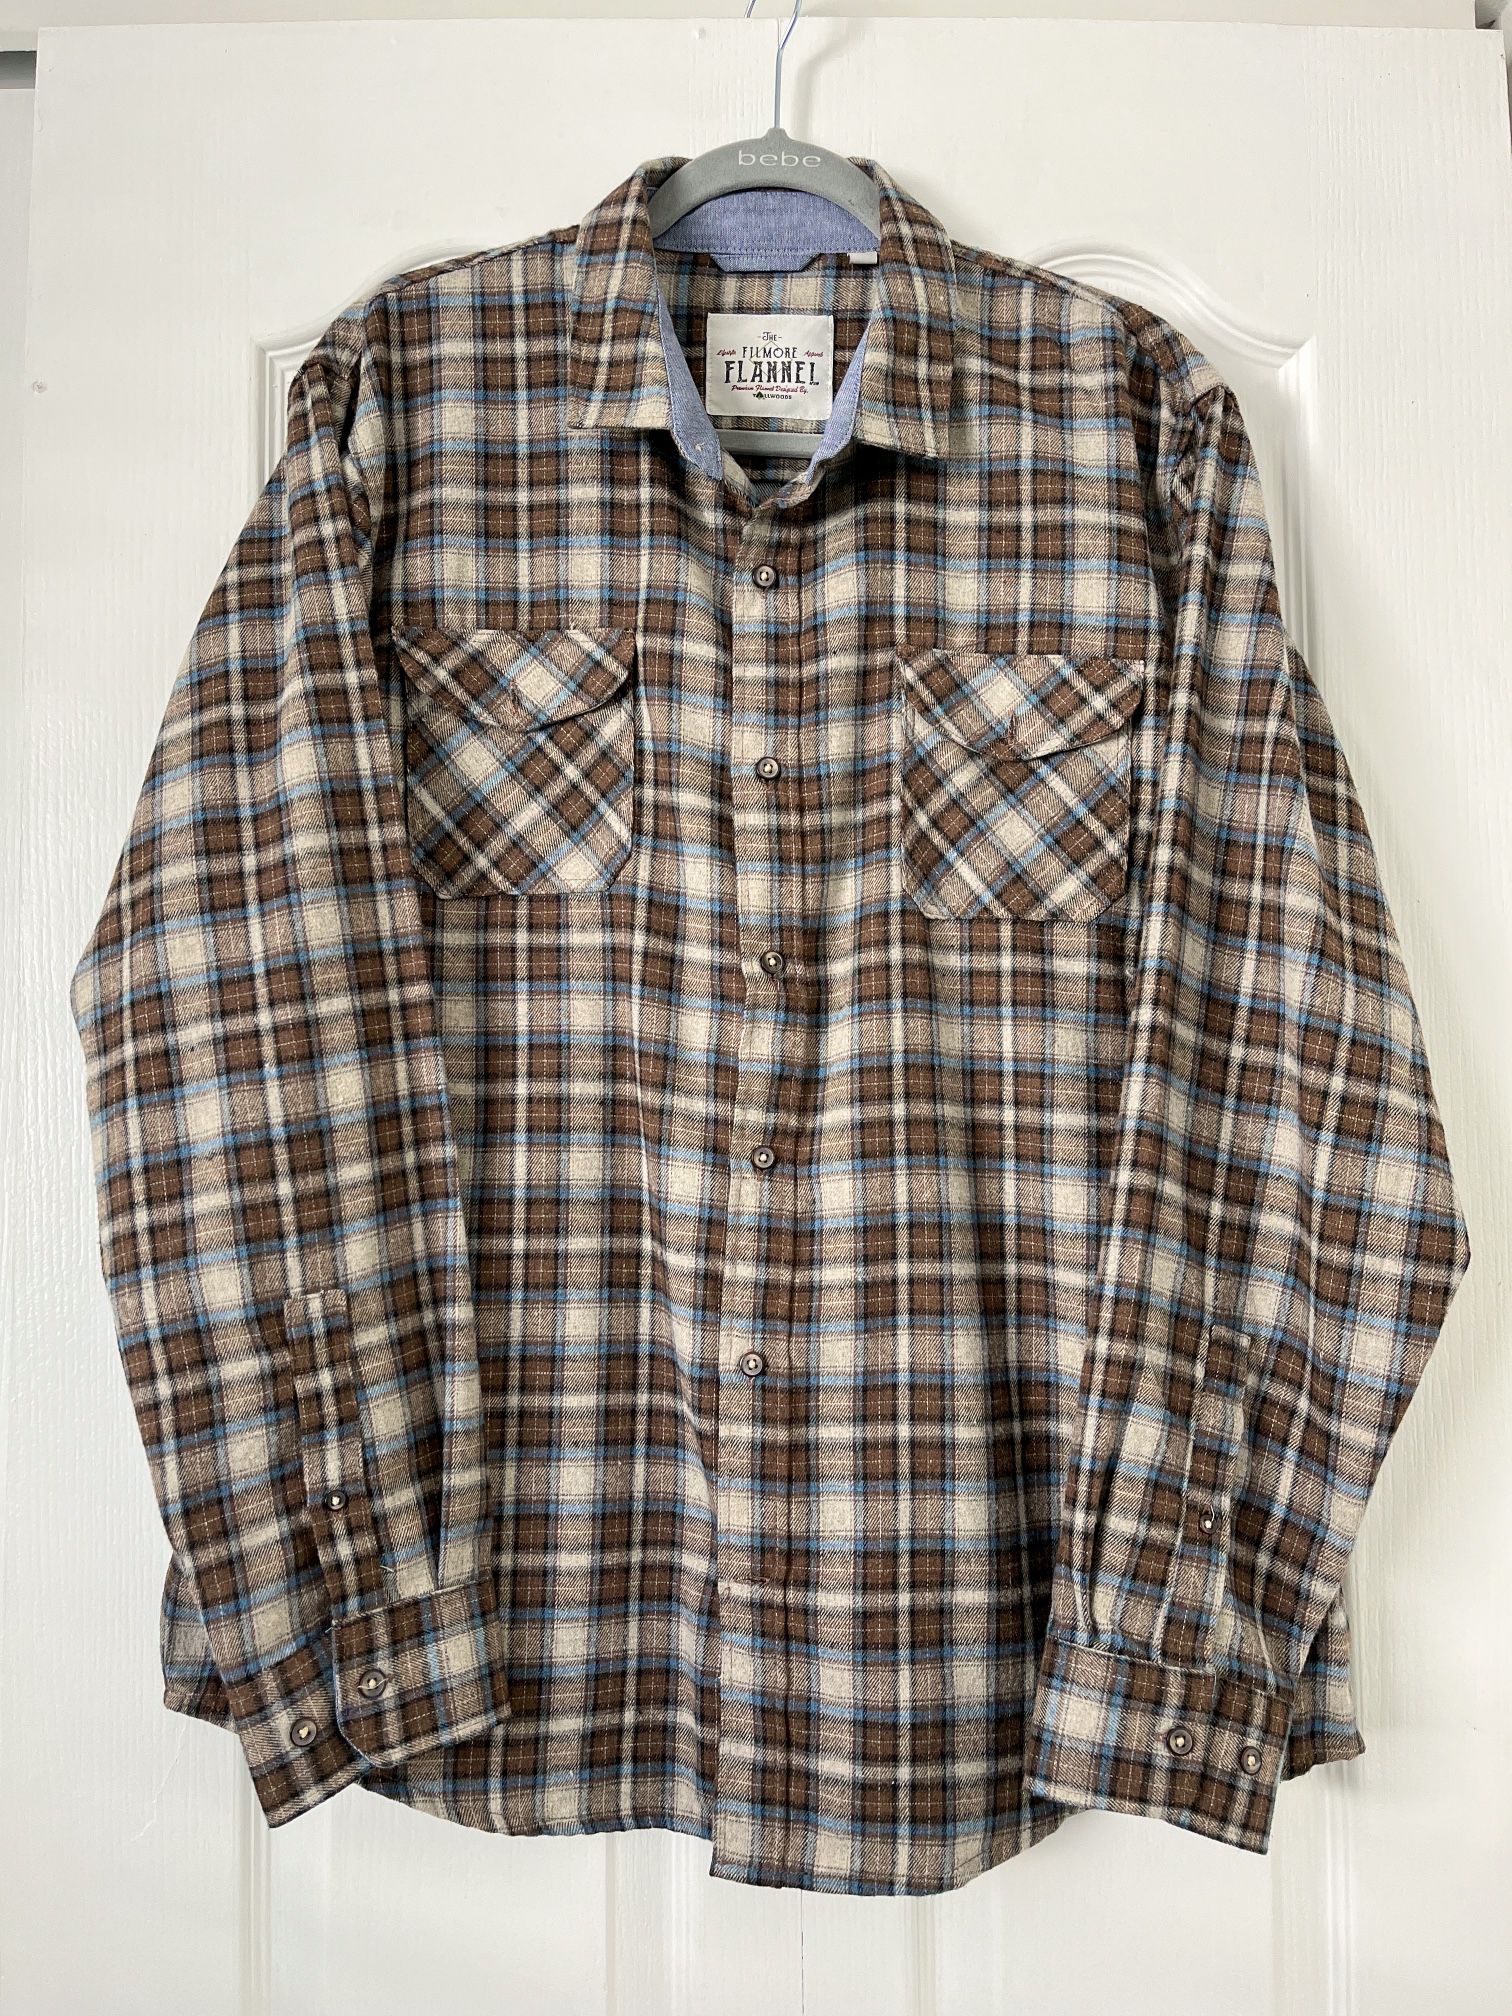 The Fillmore Flannel Plaid Shirt - Men's Size L